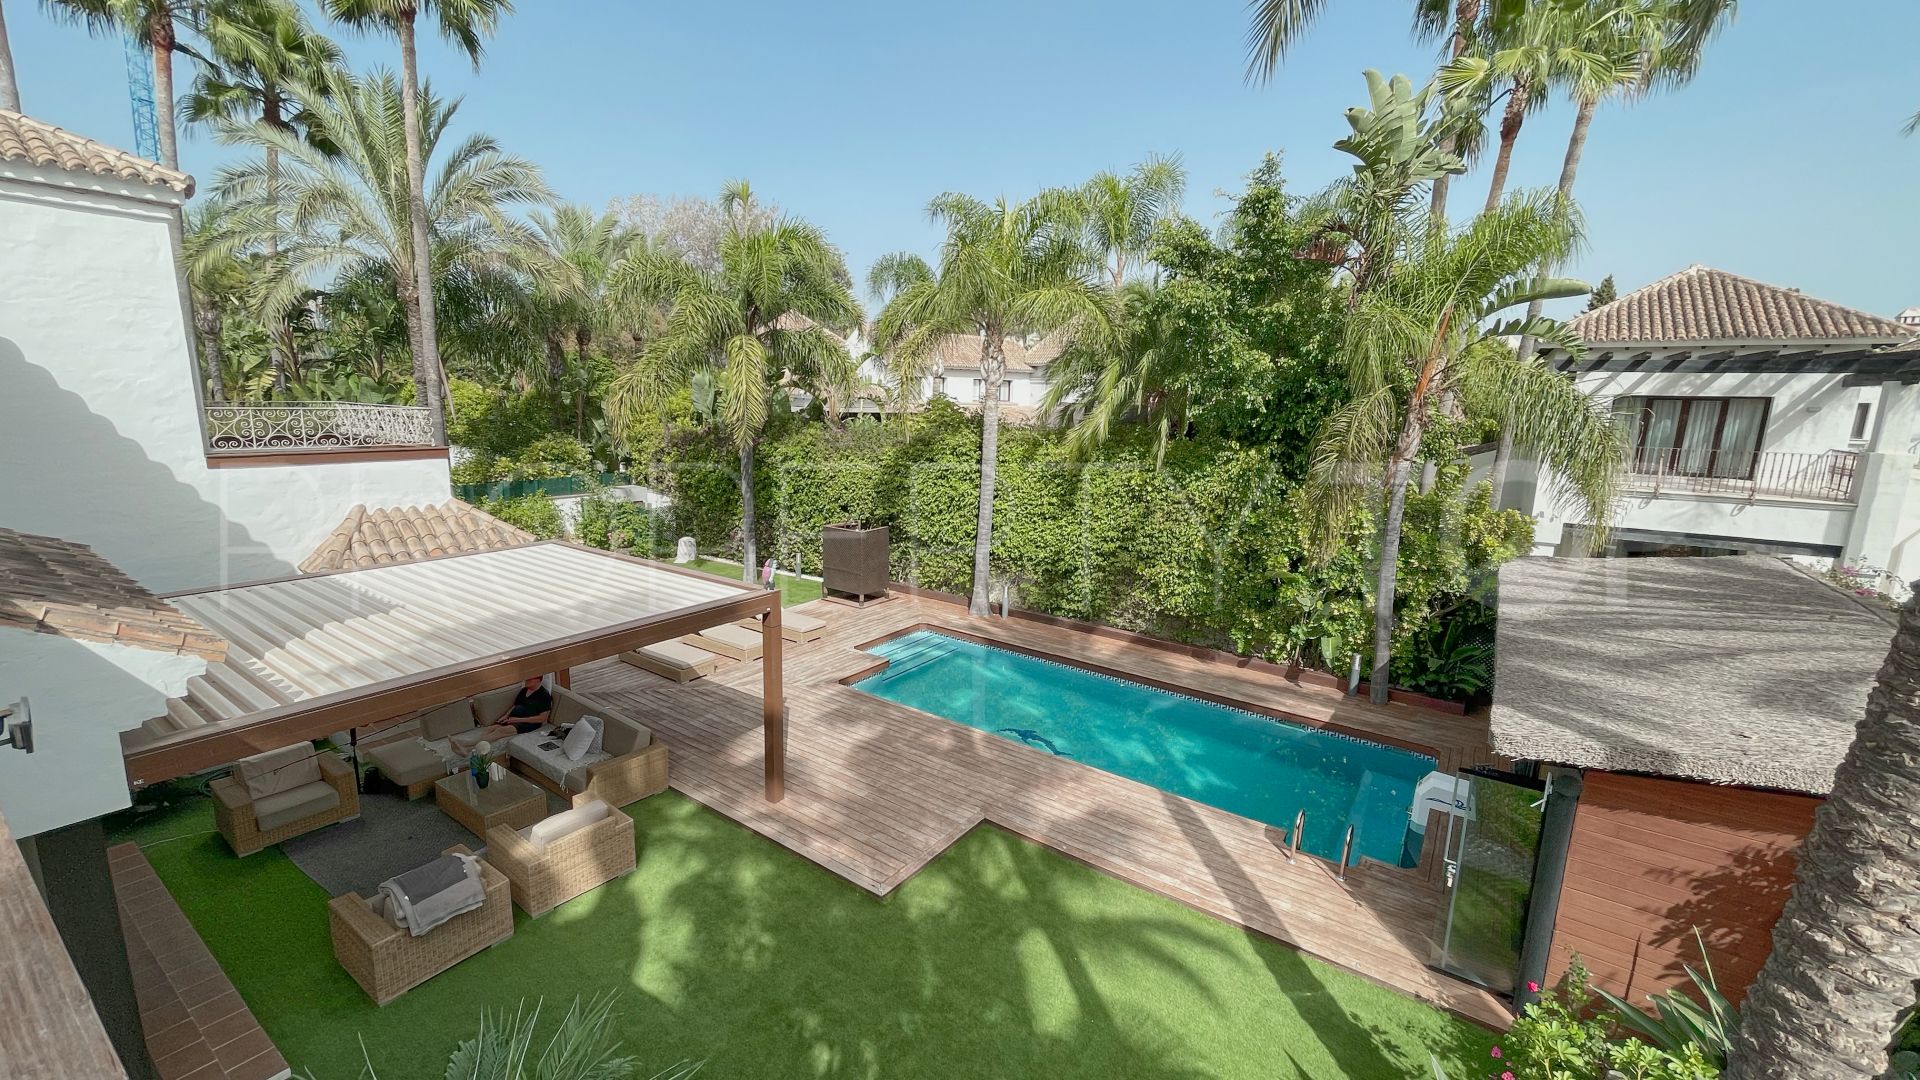 4 bedrooms villa in Las Mimosas for sale